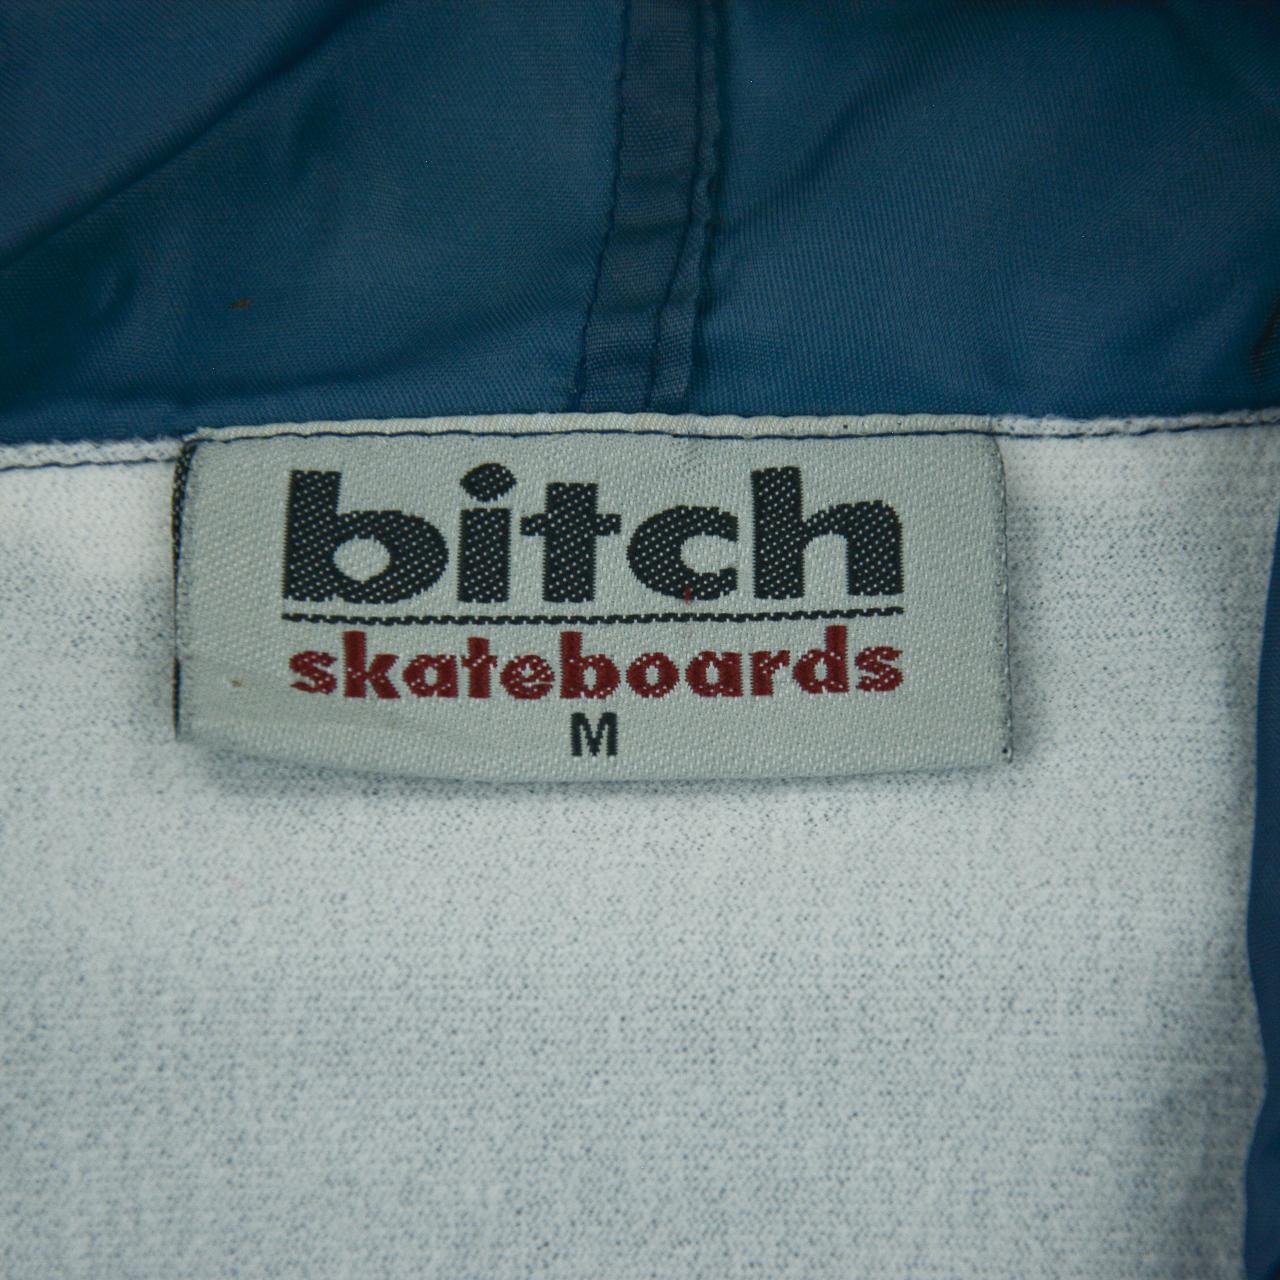 Vintage Bitch Skateboards Jacket Size M - Known Source